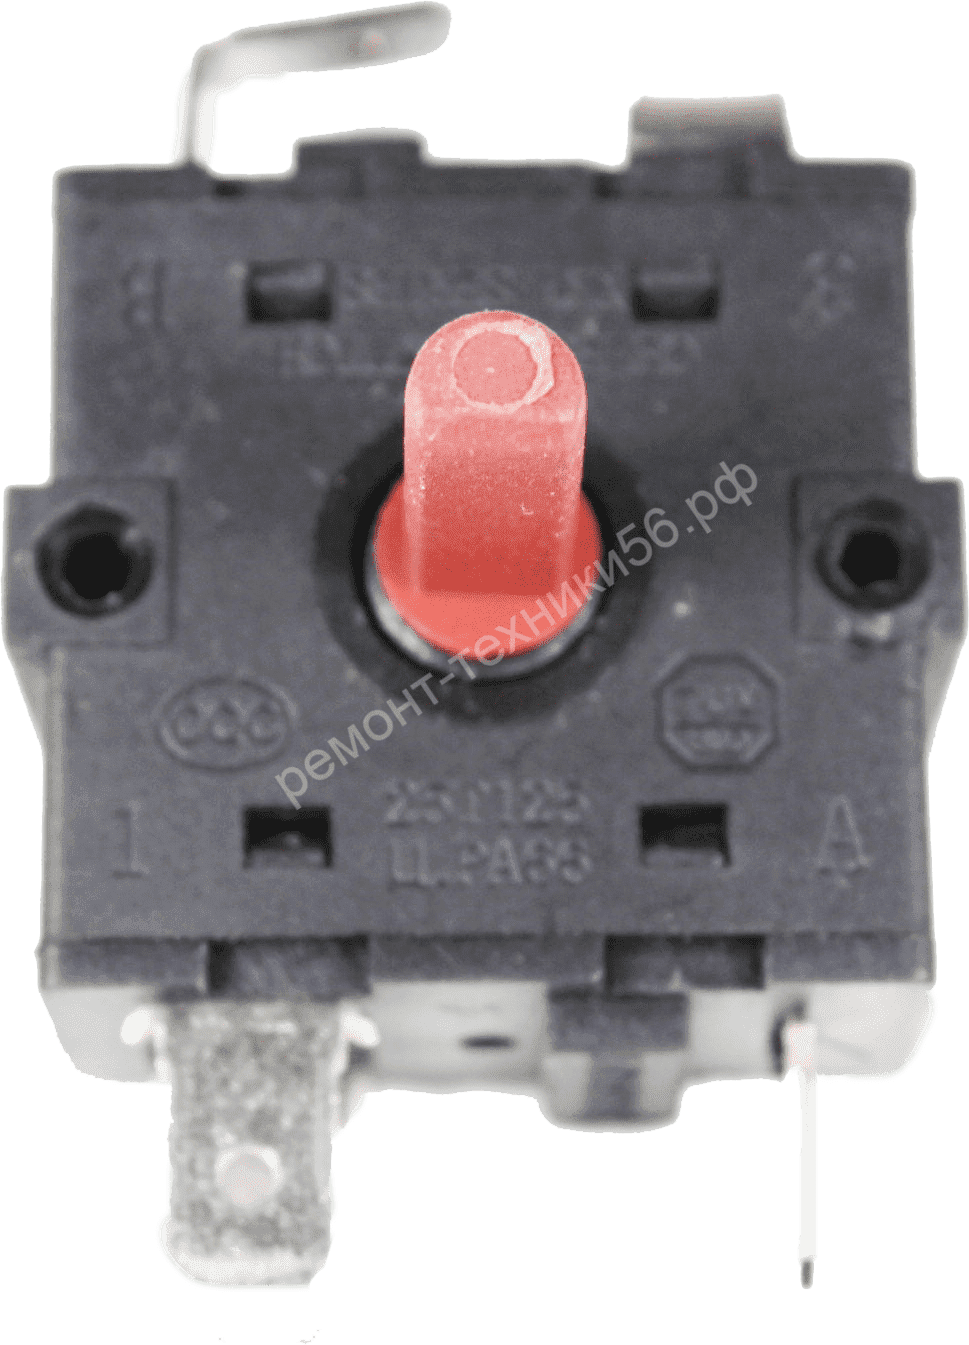 Переключатель Rotary Switch XK1-233,2-1 по выгодной цене фото3